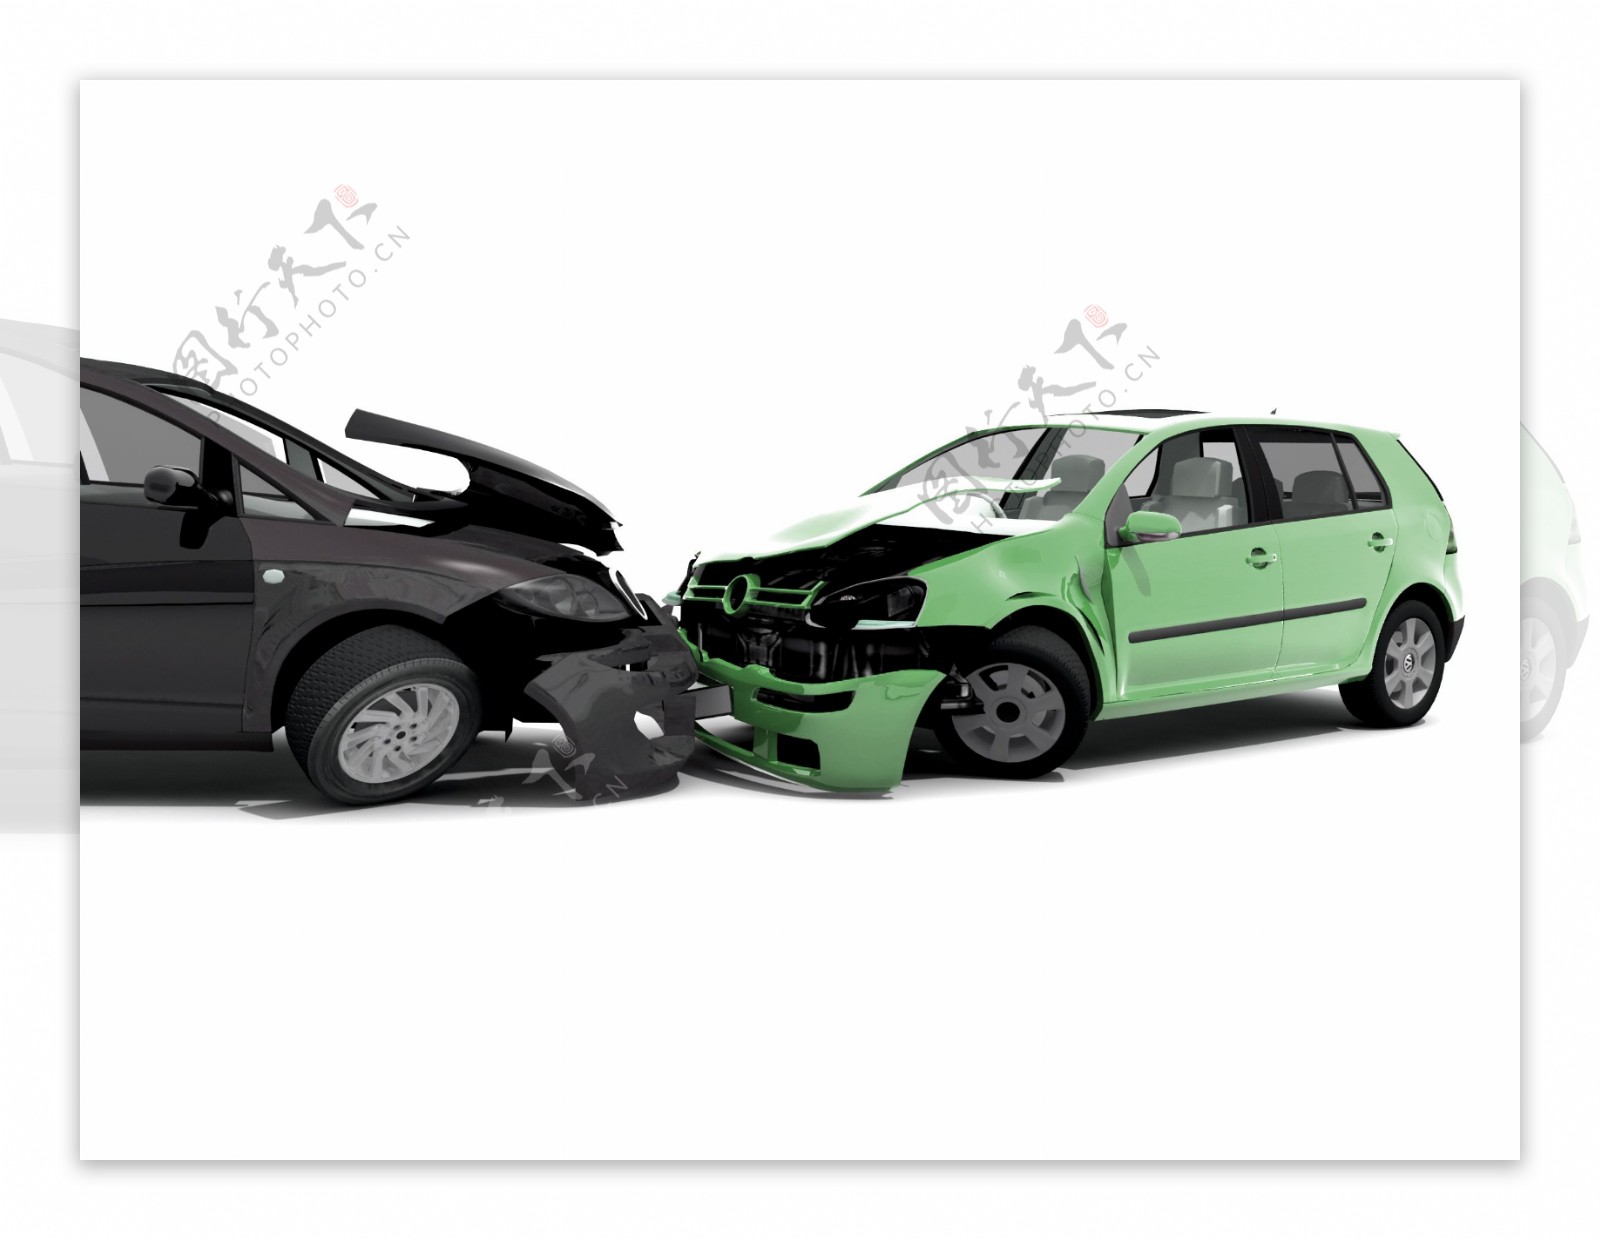 两辆互相撞车的汽车图片